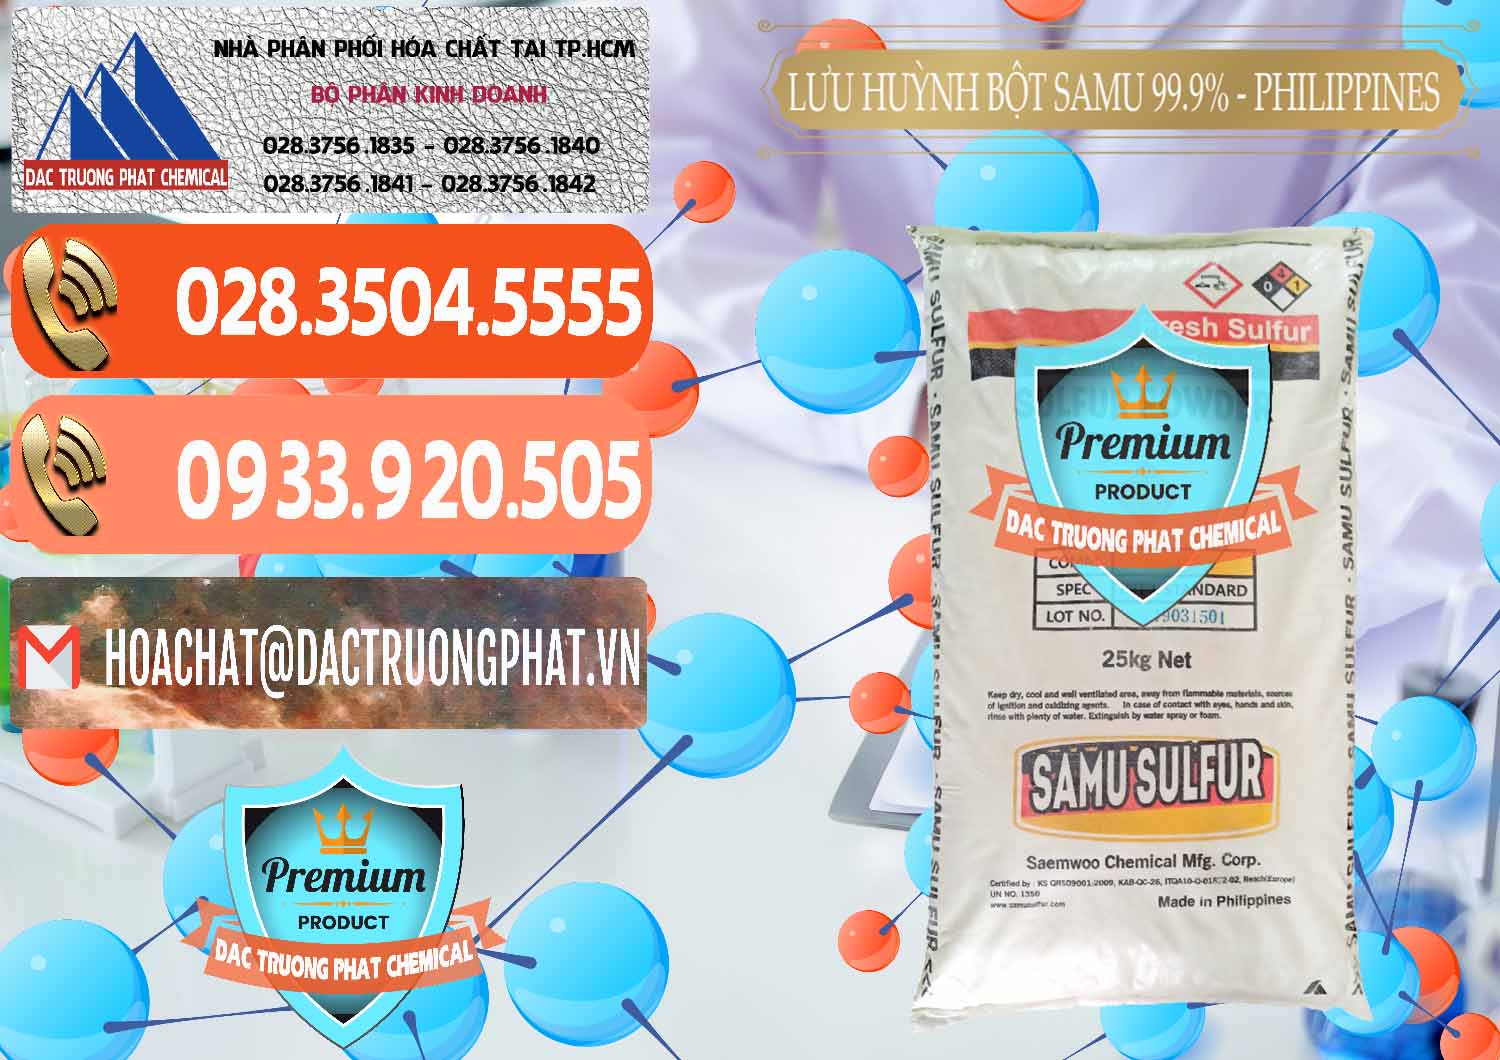 Cty chuyên bán _ cung cấp Lưu huỳnh Bột - Sulfur Powder Samu Philippines - 0201 - Đơn vị chuyên bán ( cung cấp ) hóa chất tại TP.HCM - hoachatmientay.com